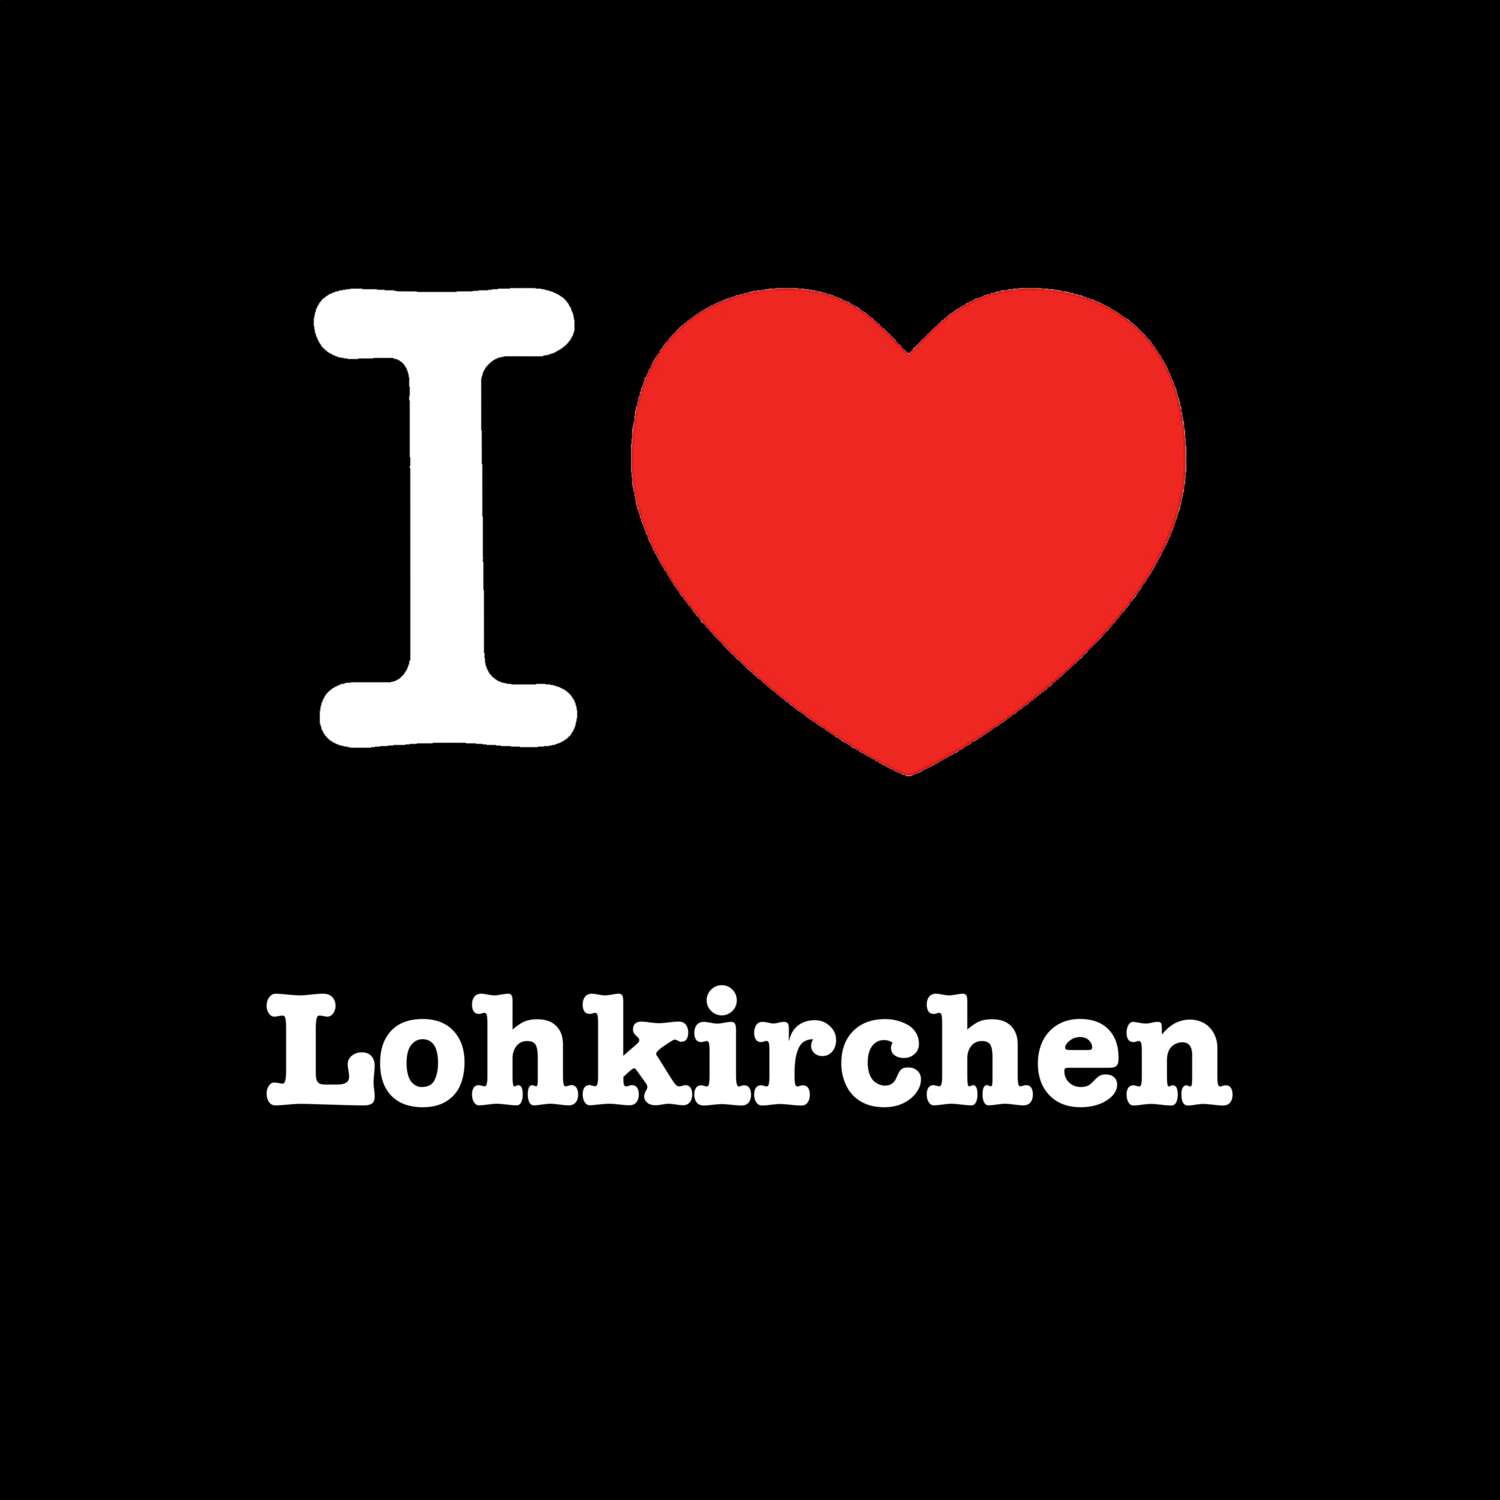 Lohkirchen T-Shirt »I love«